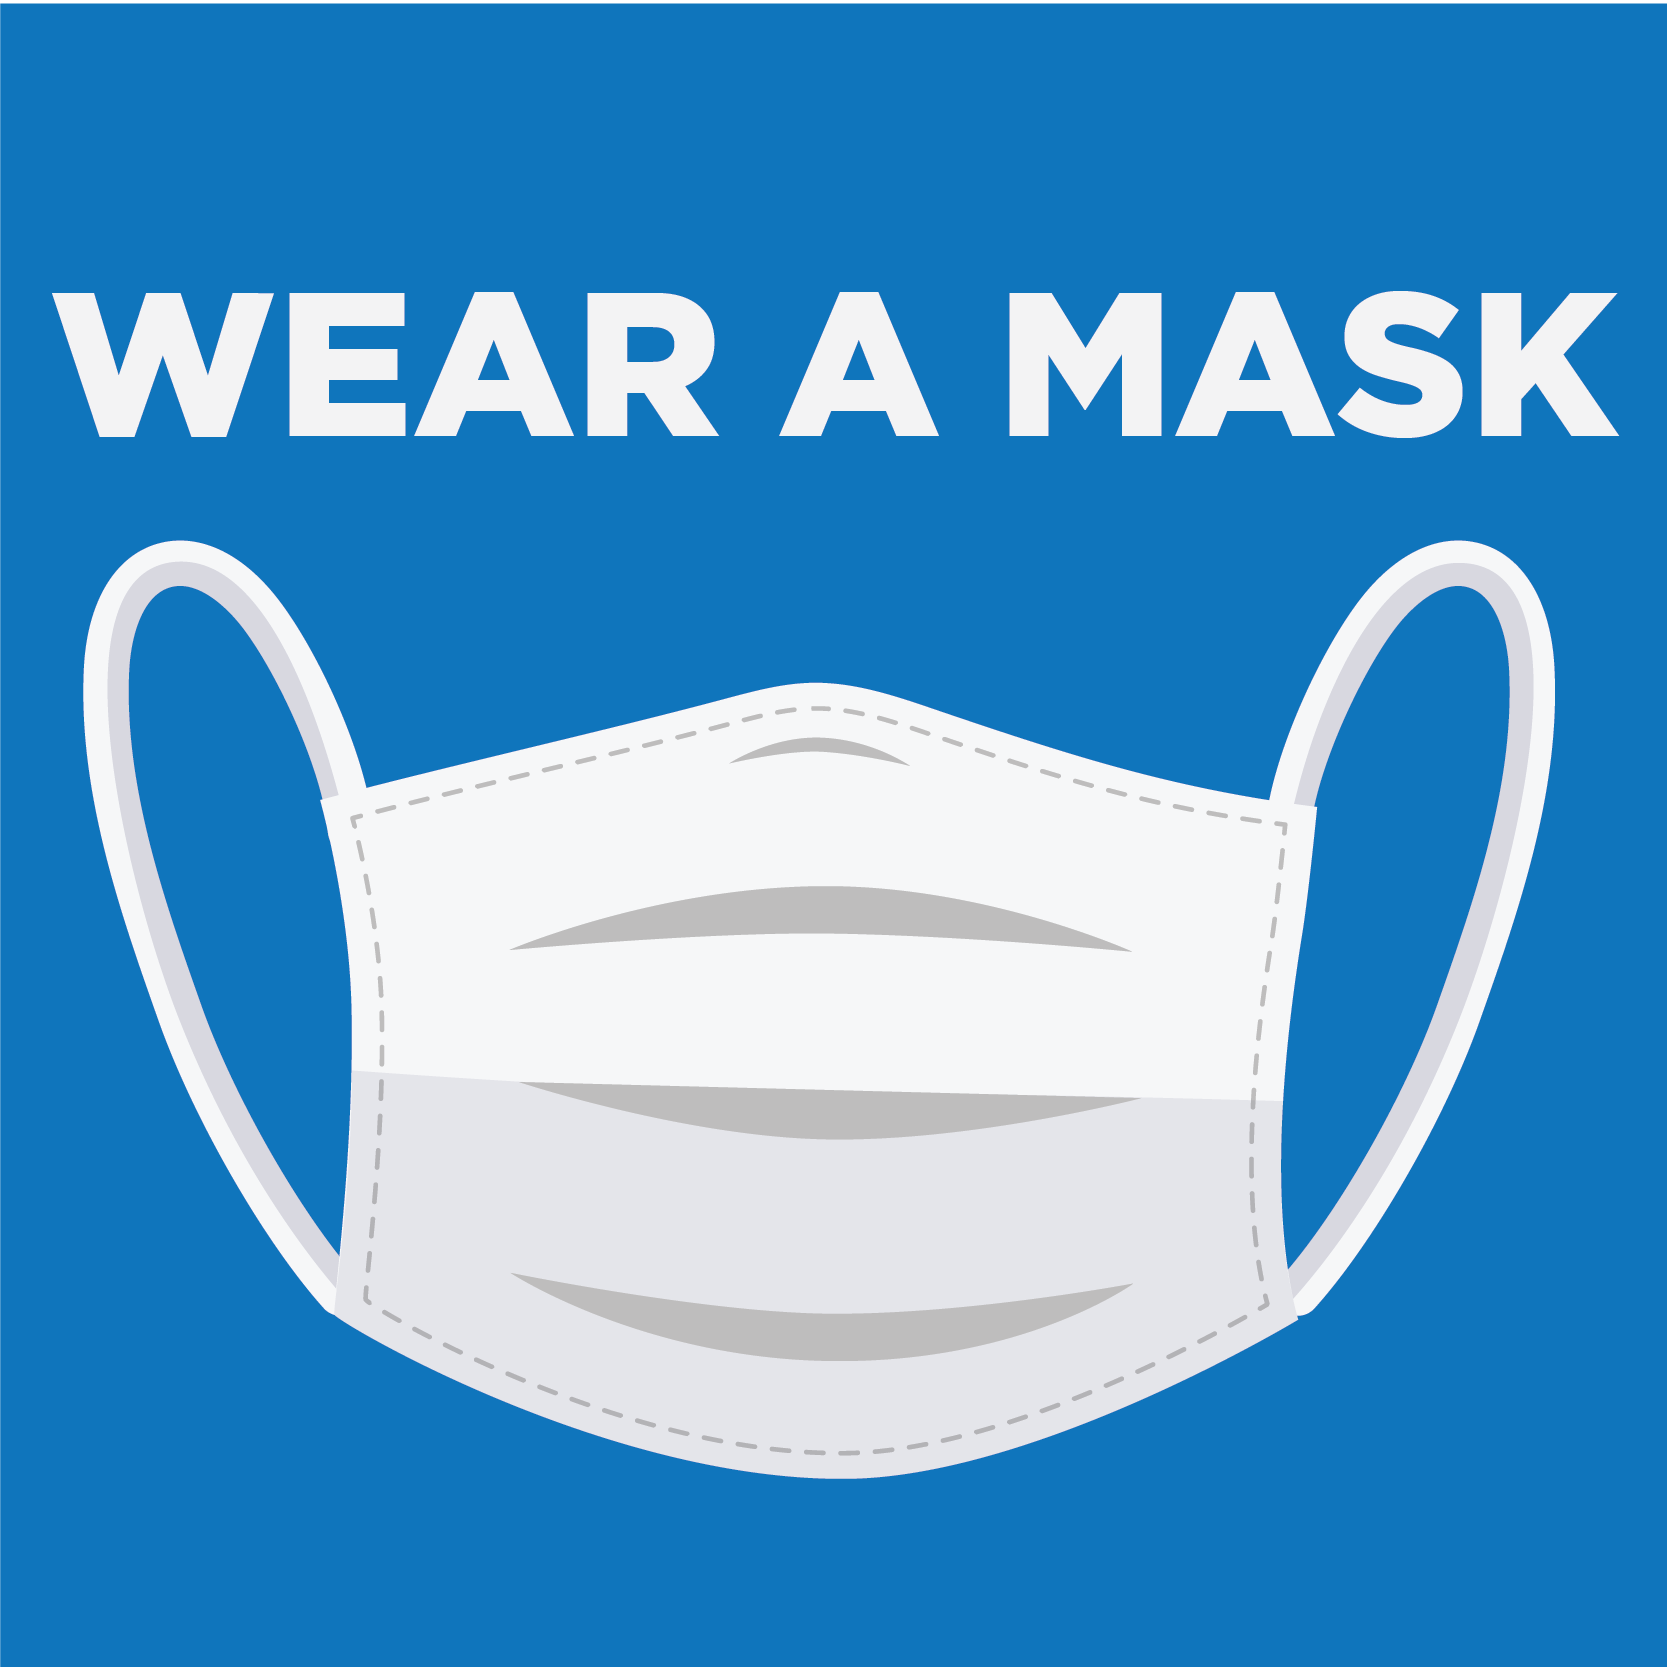 Wear a Mask_5 - Instagram-15